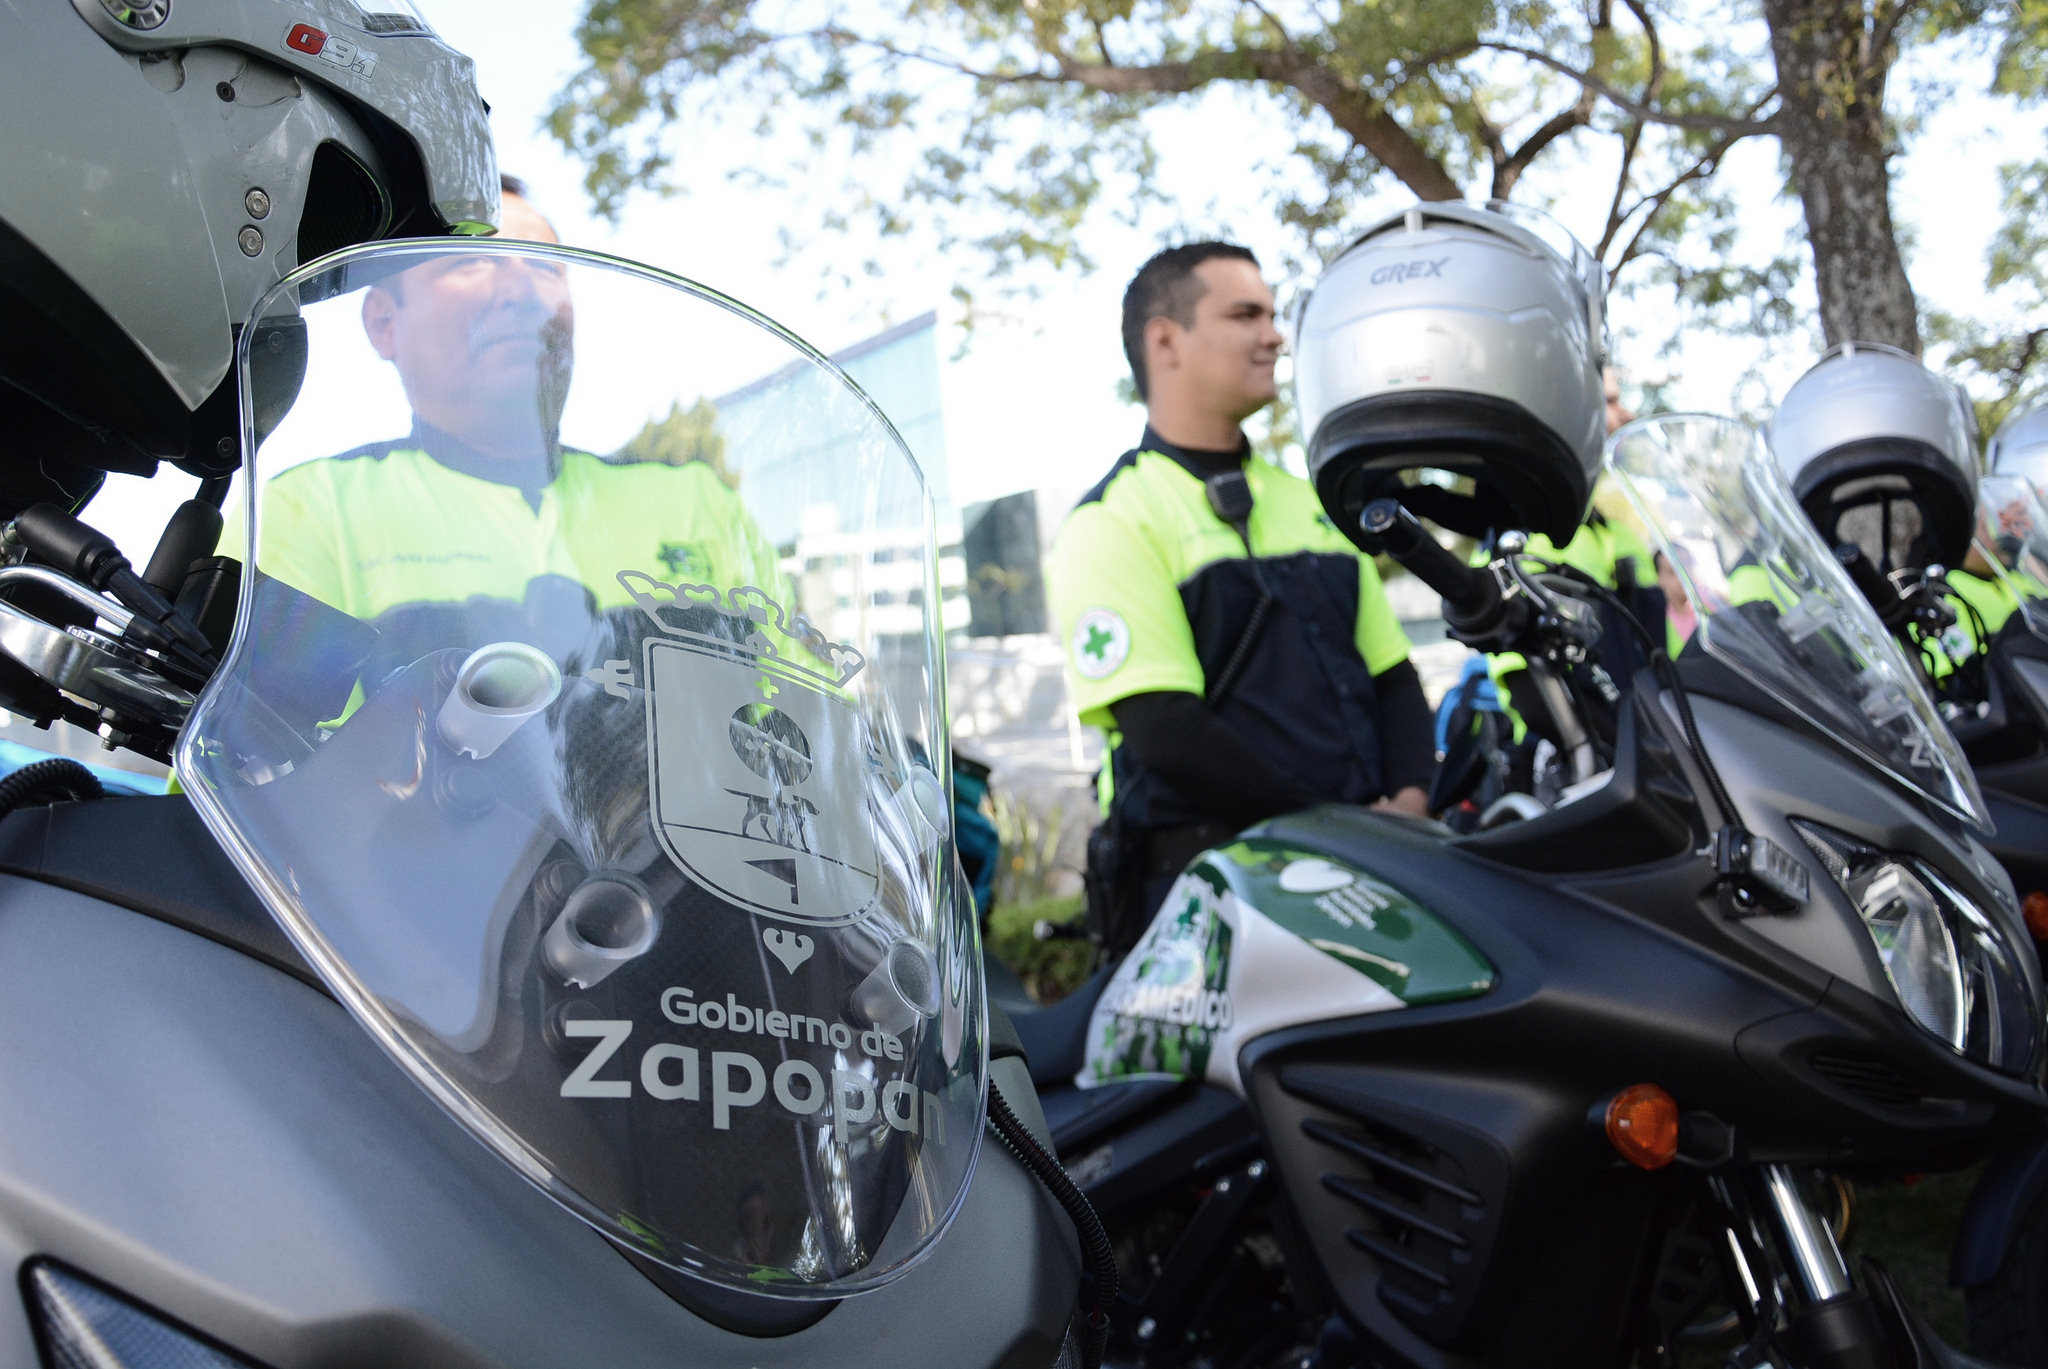 Salud Zapopan refuerza capacidad de respuesta del Escuadrón Fénix con nueve motocicletas nuevas